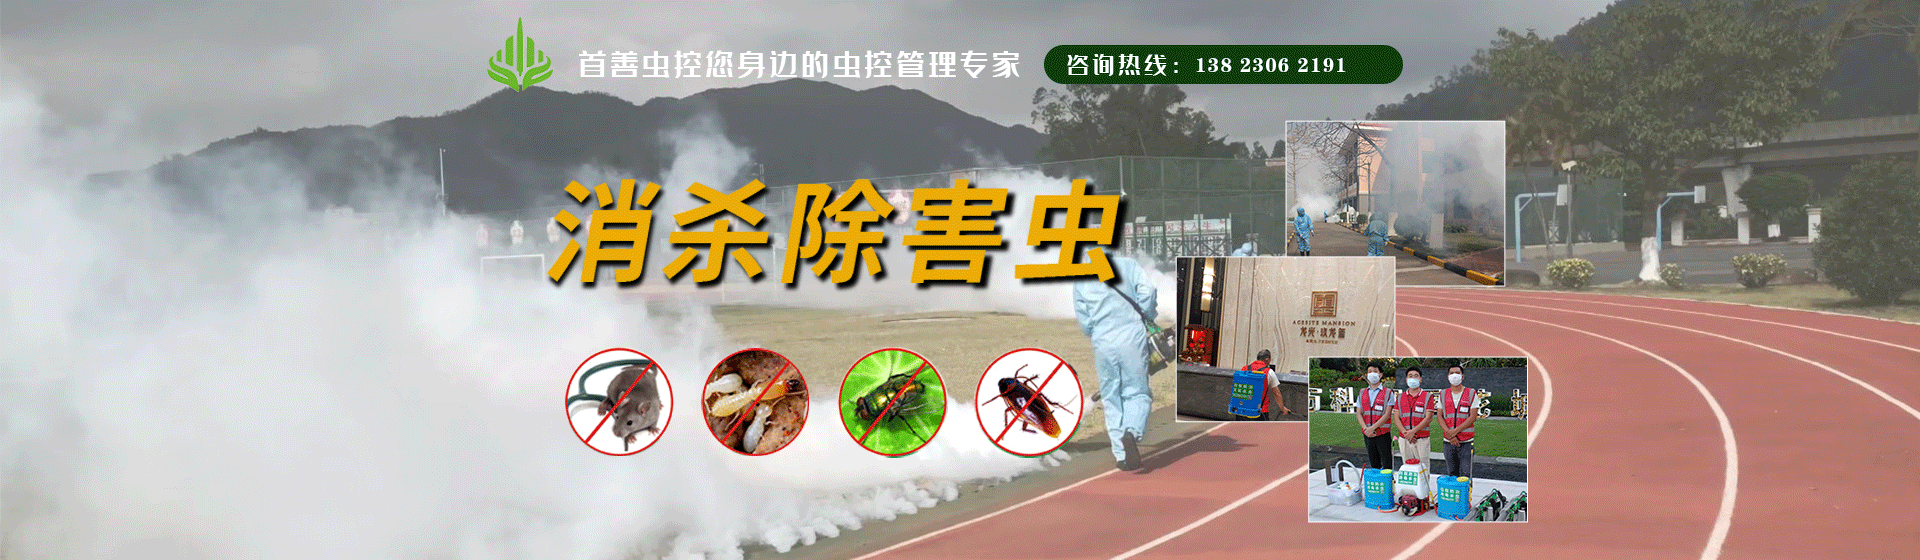 防治白蚁的有效方法 - 新闻中心 - 珠海市首善环境卫生服务有限公司